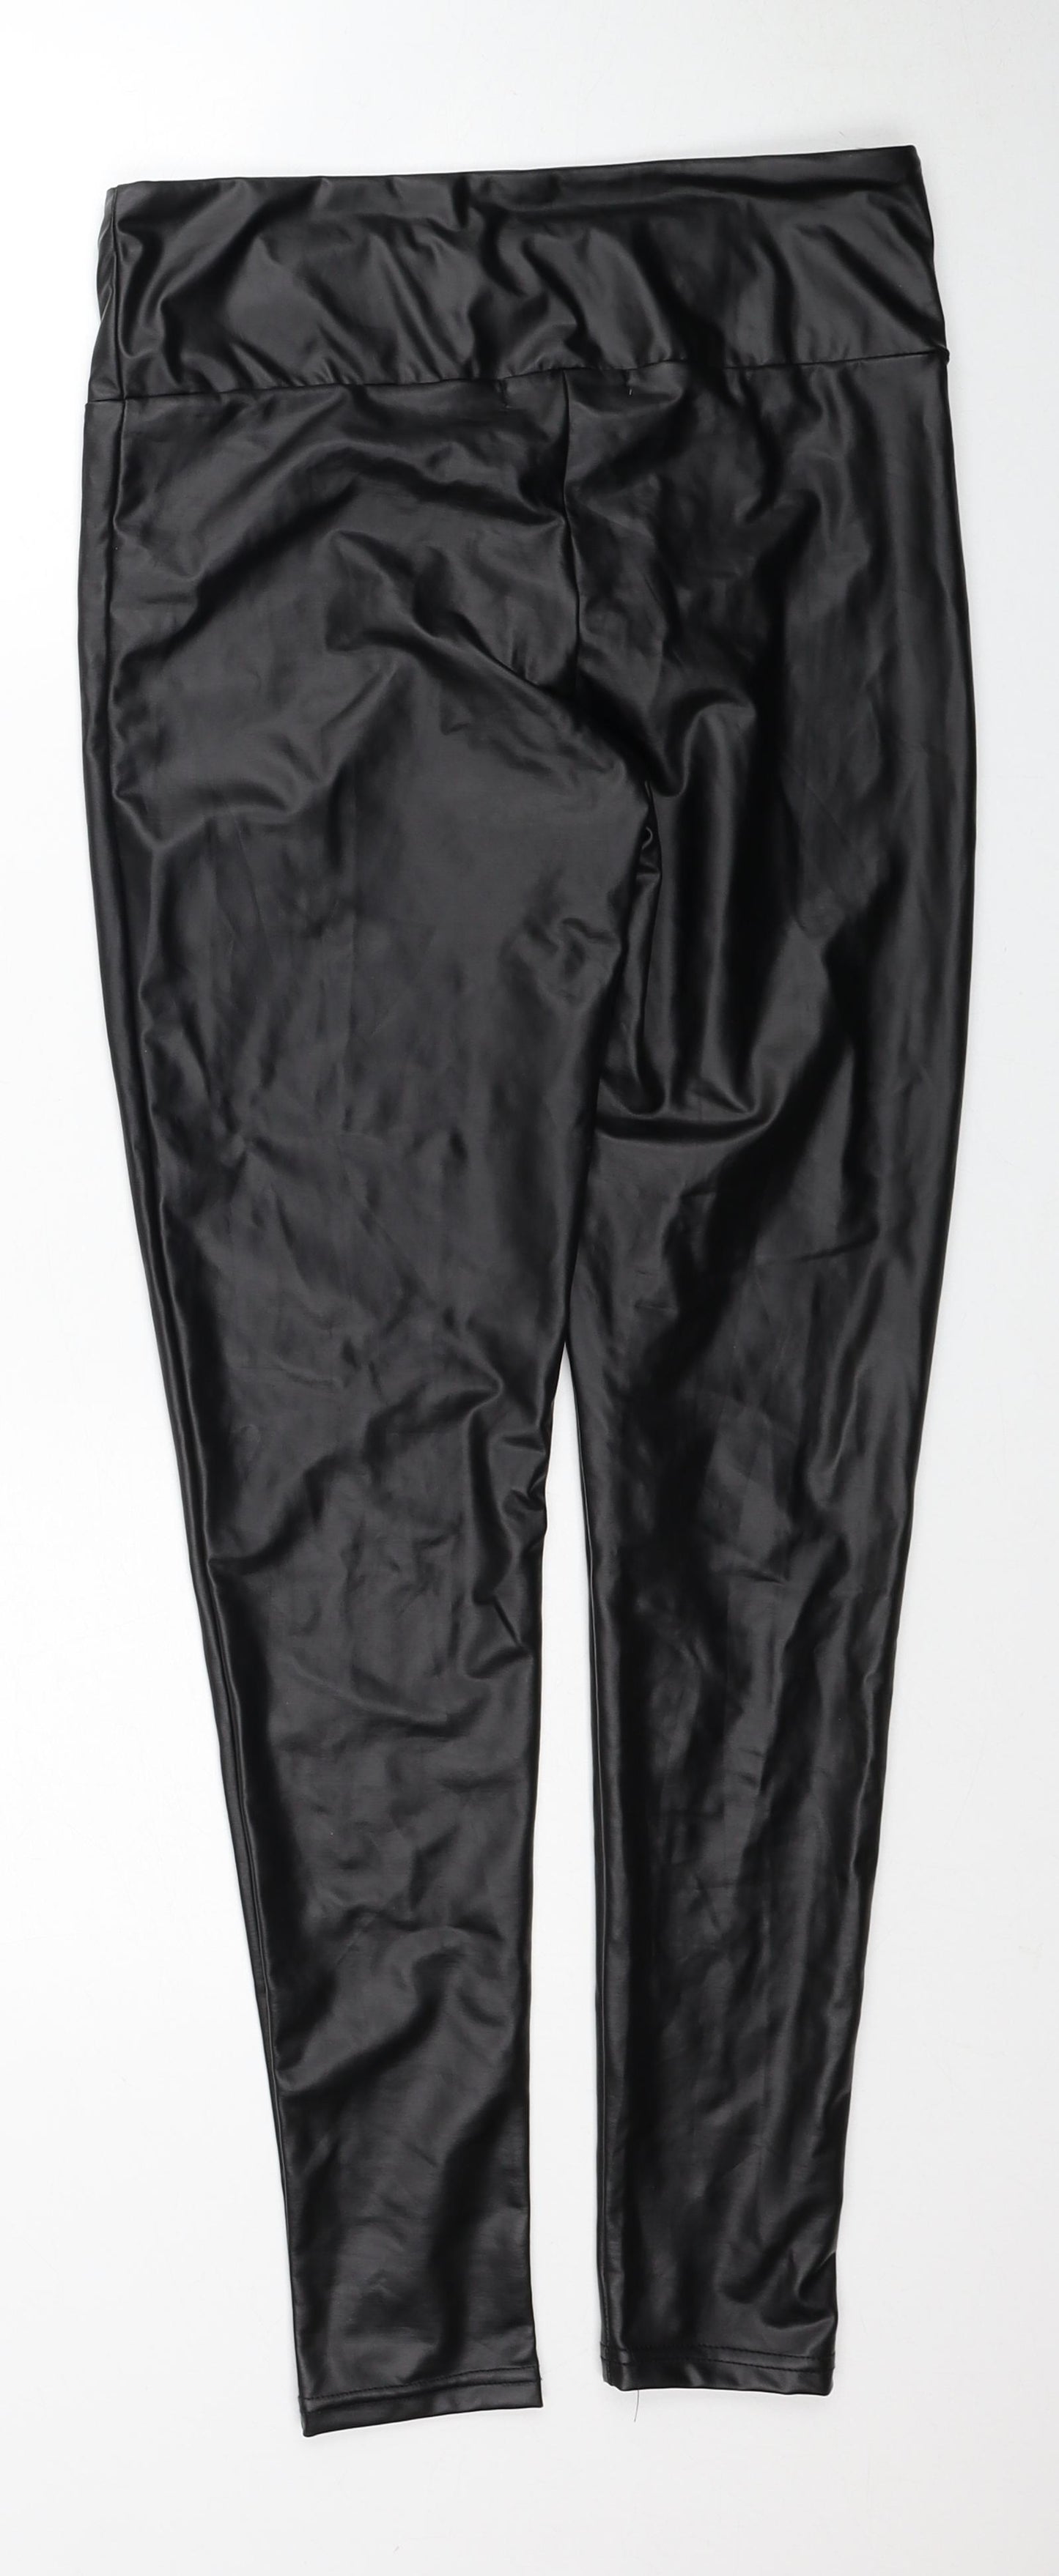 Primark Womens Black Polyester Jogger Leggings Size 10